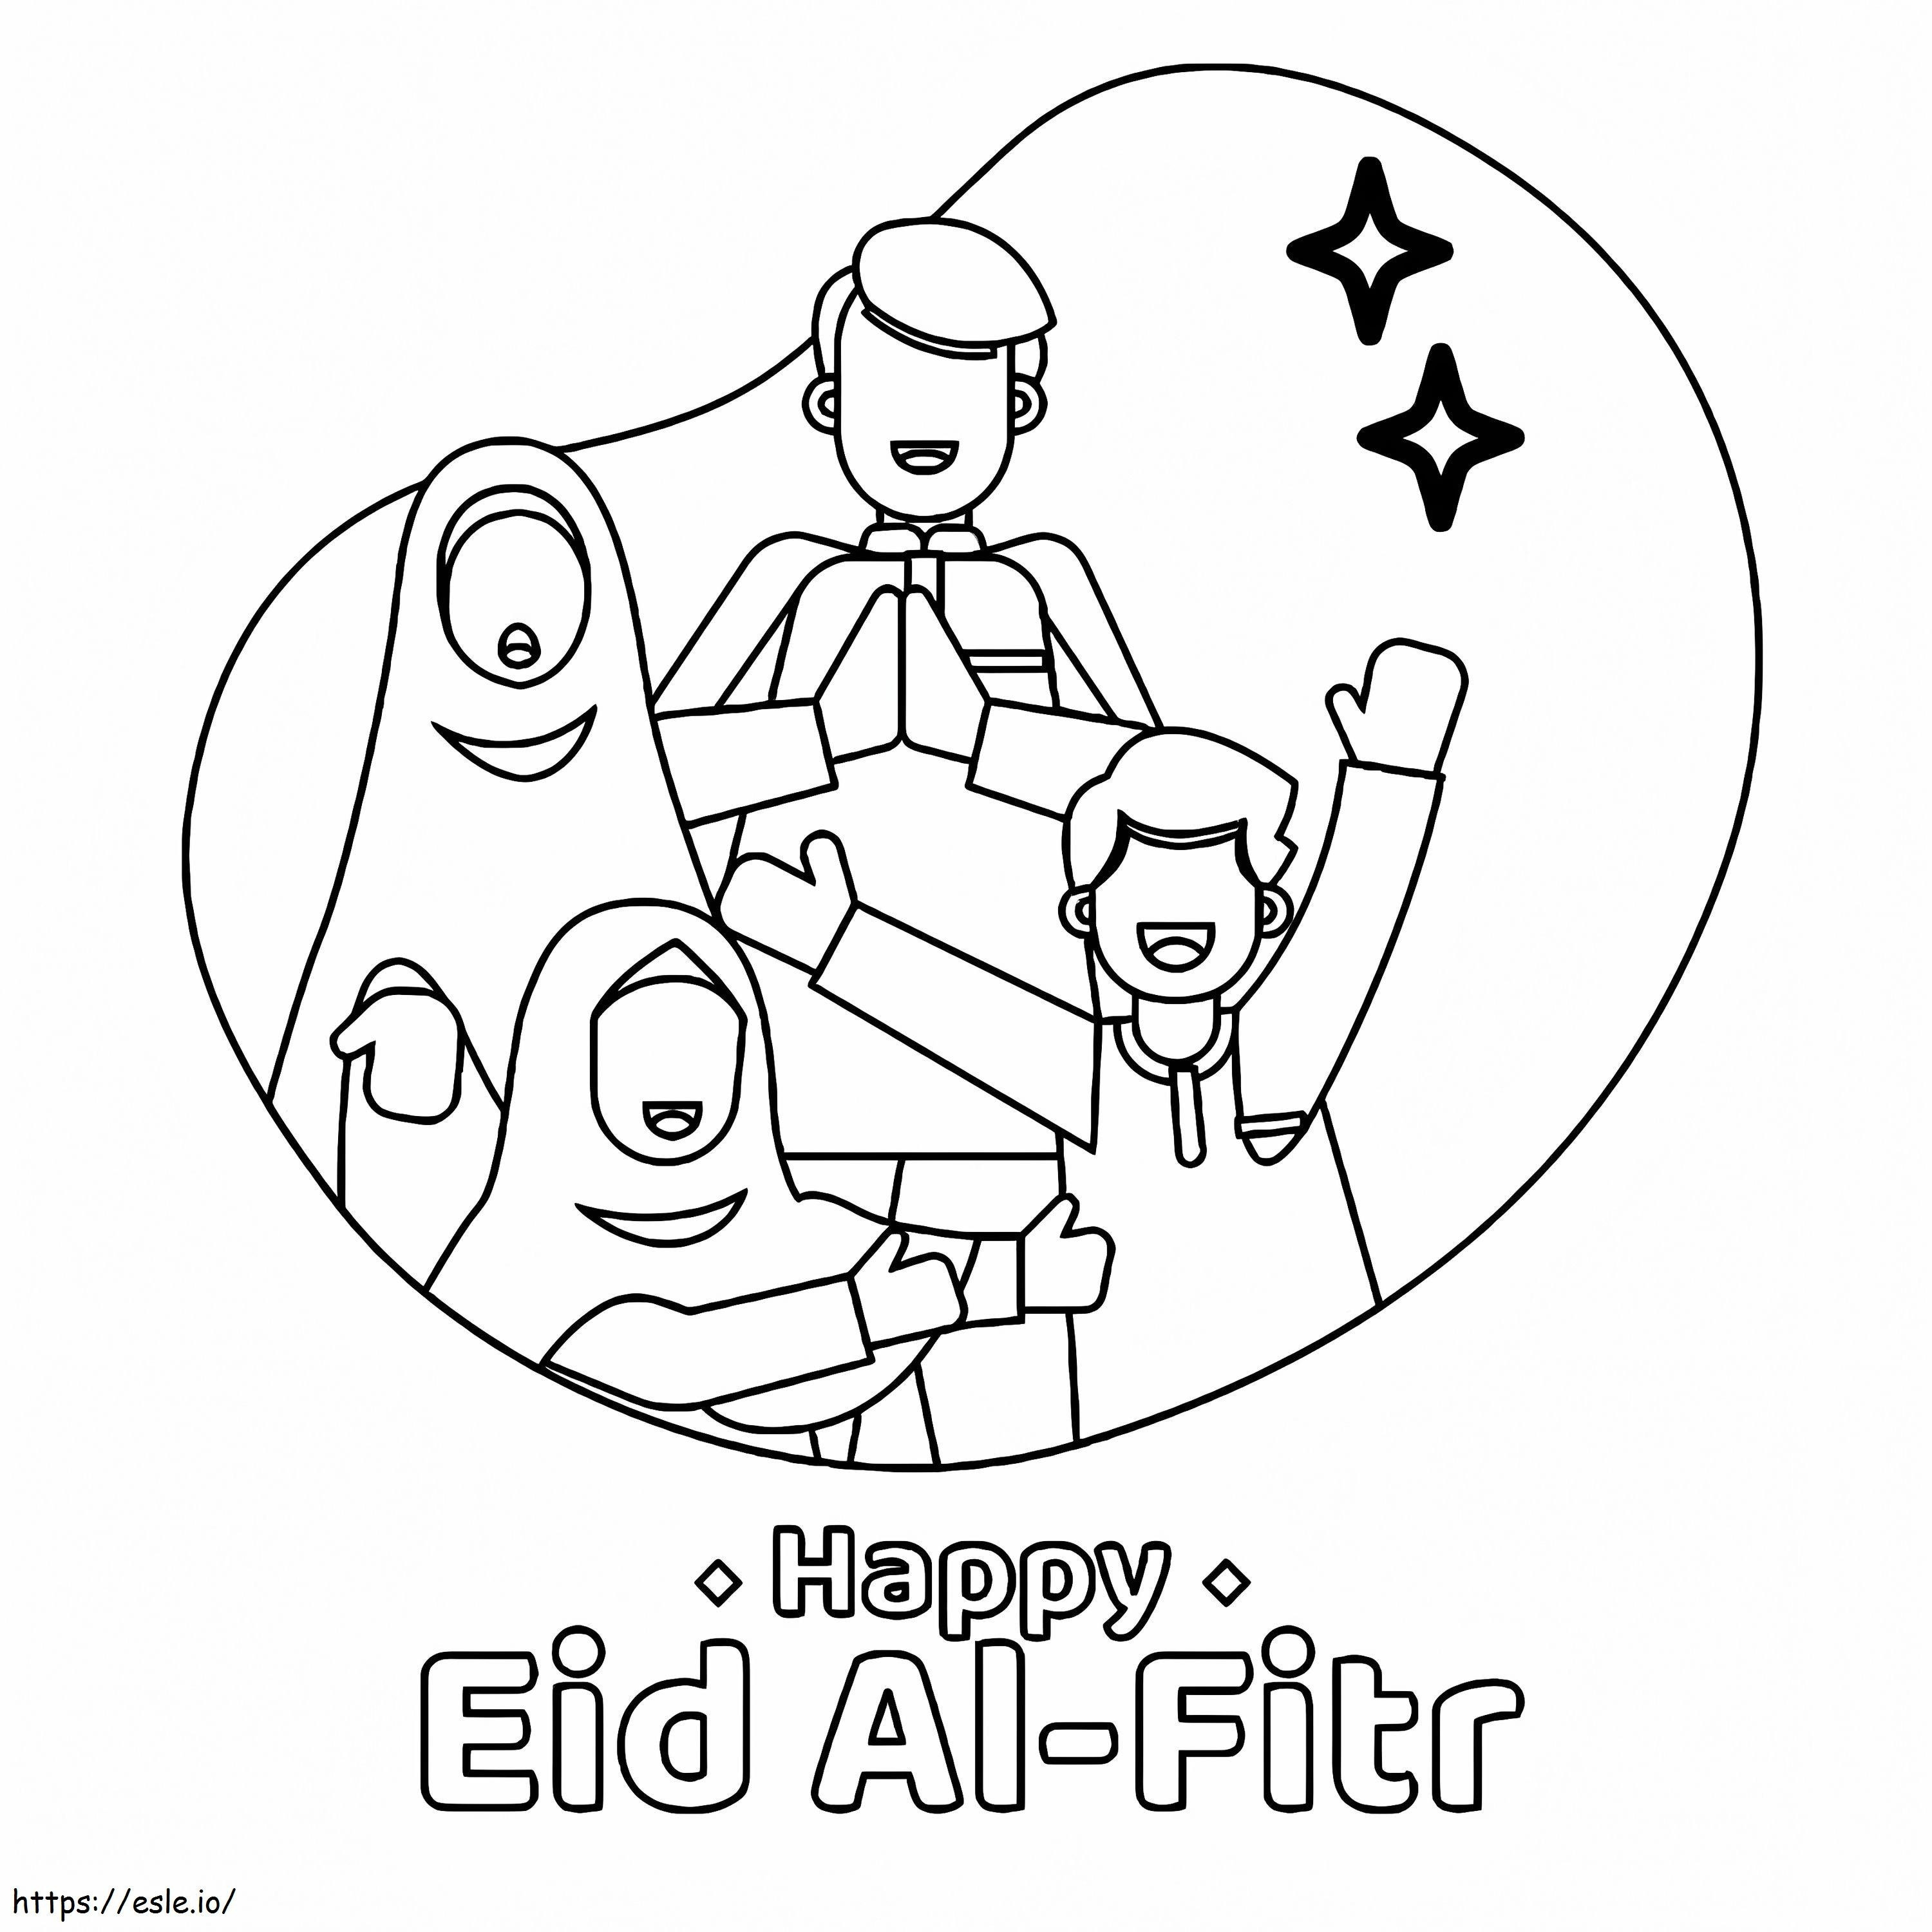 Happy Eid Al Fitr coloring page